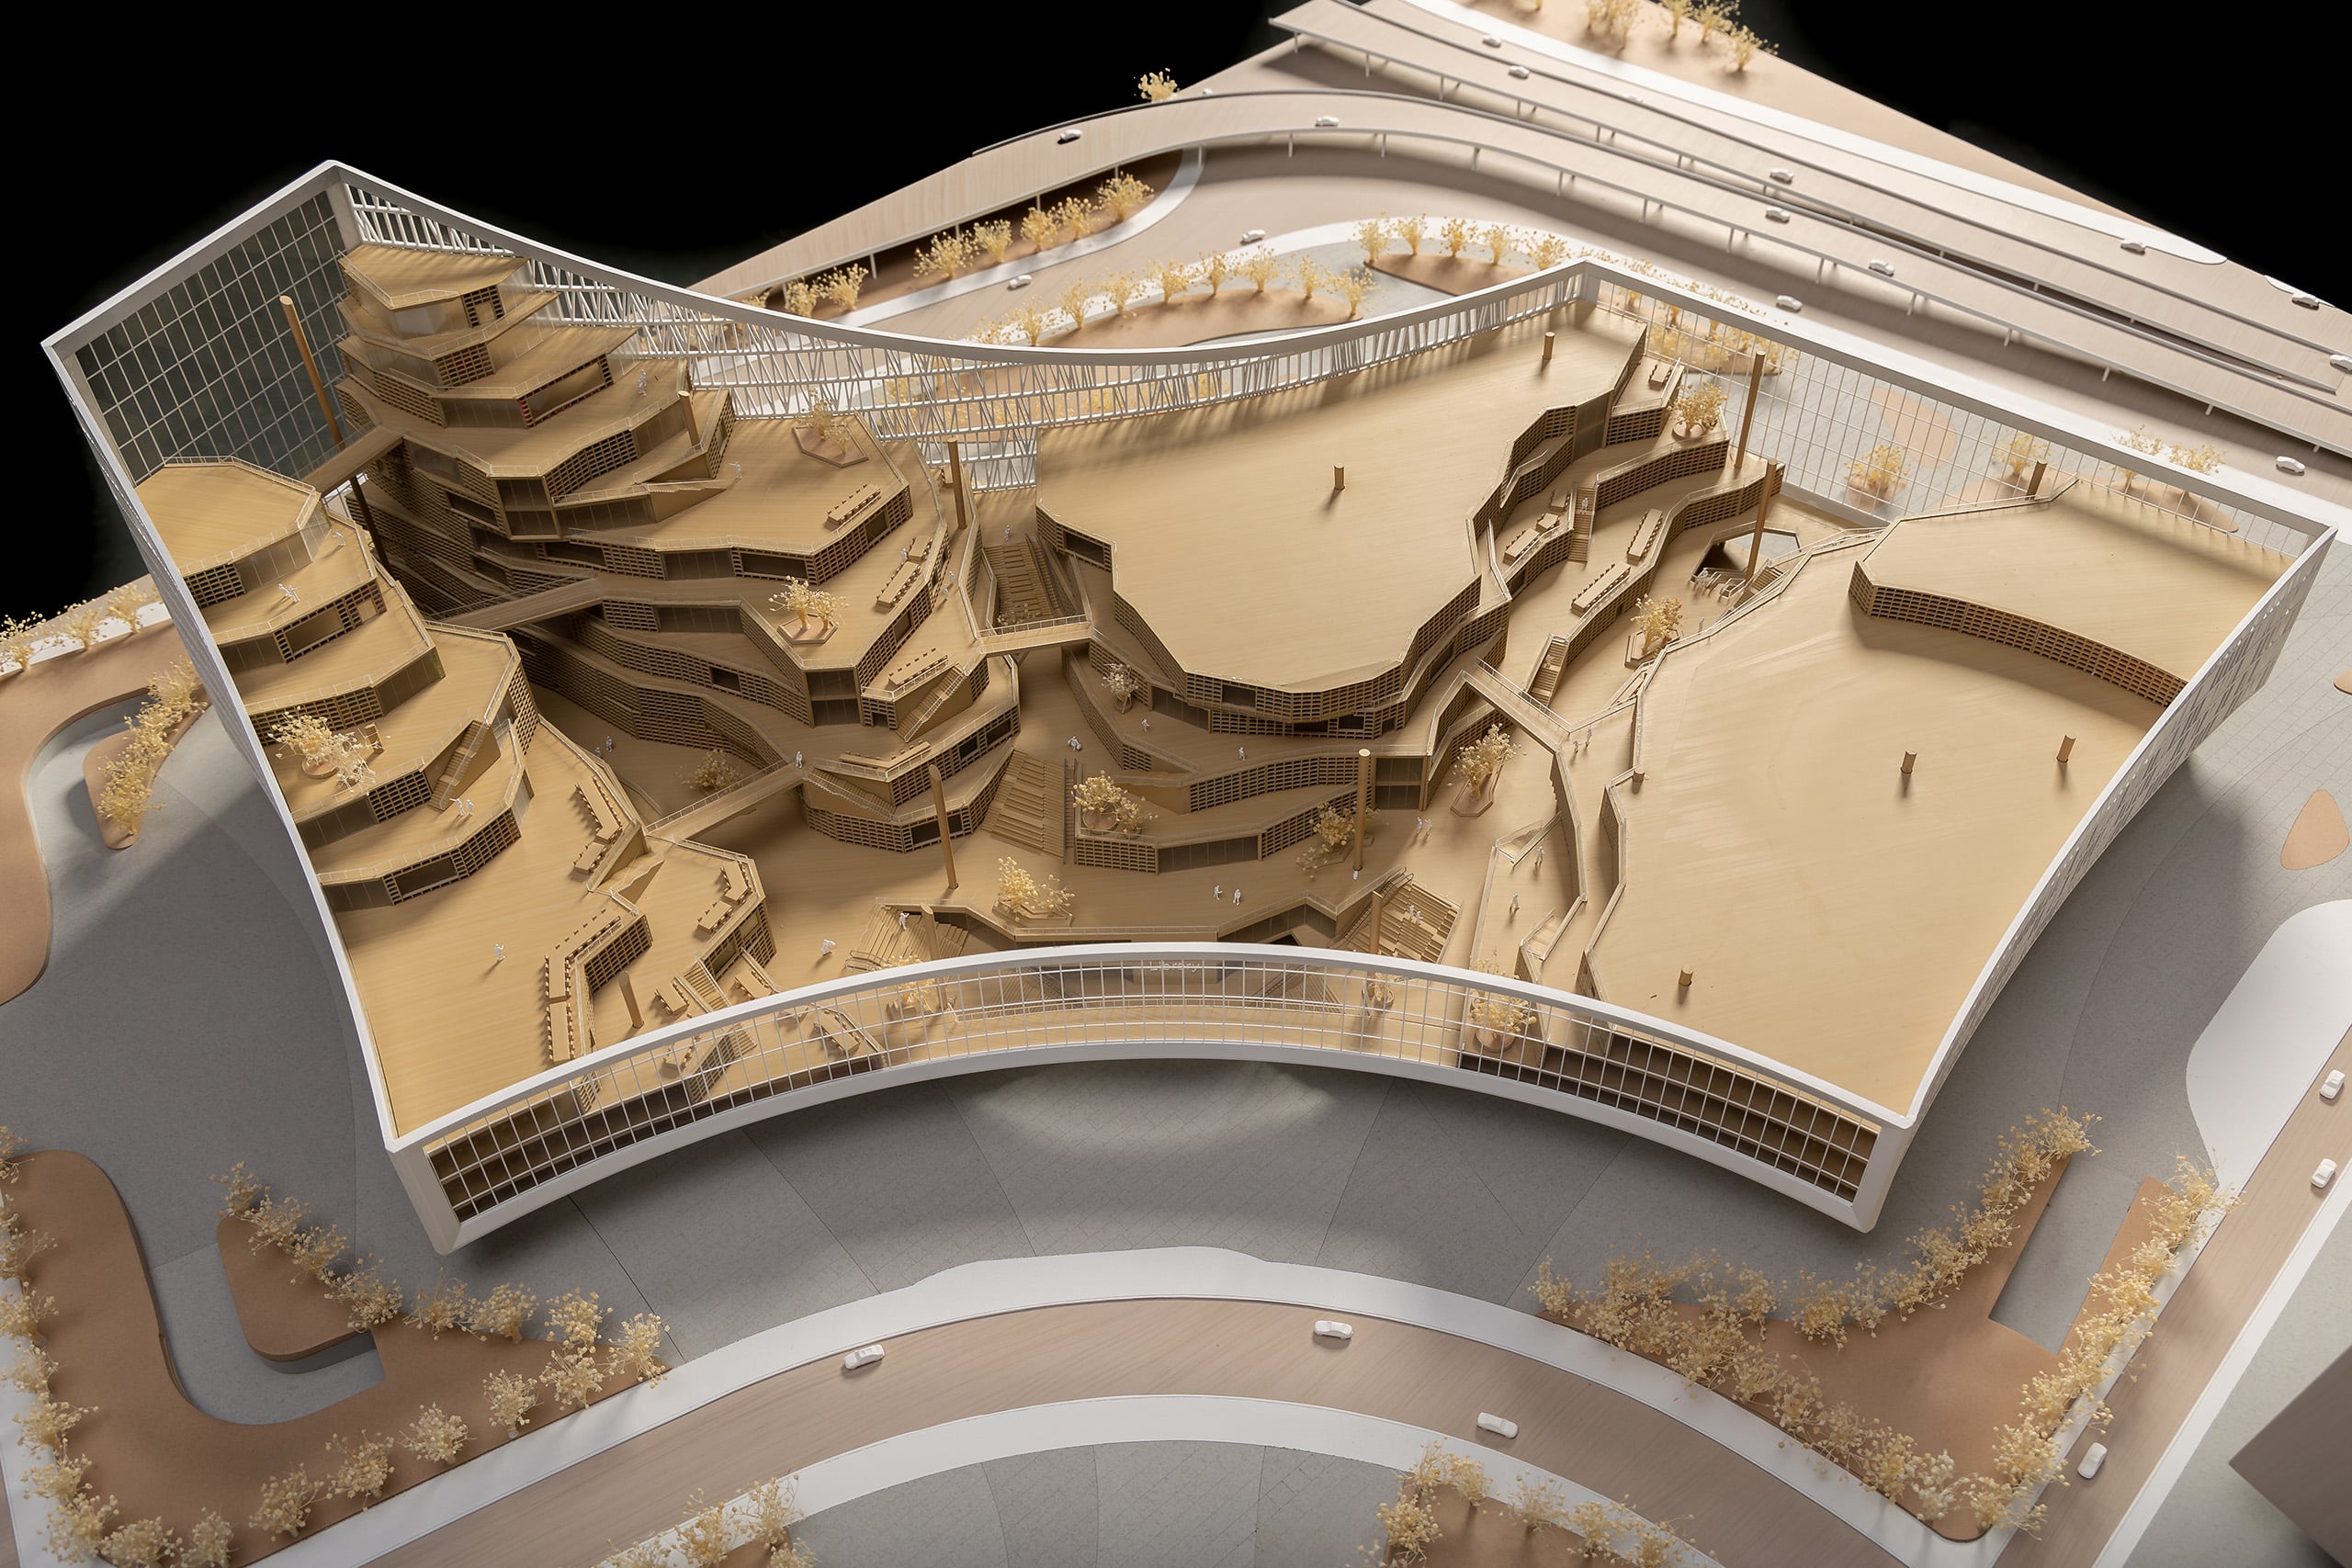 Wie genau das gewonnene Wissen der Besucher symbolisch über die Ebenen zum unteren Hauptplatz gelangen soll, zeigt ein Miniatur-Modell. Modell: © MVRDV